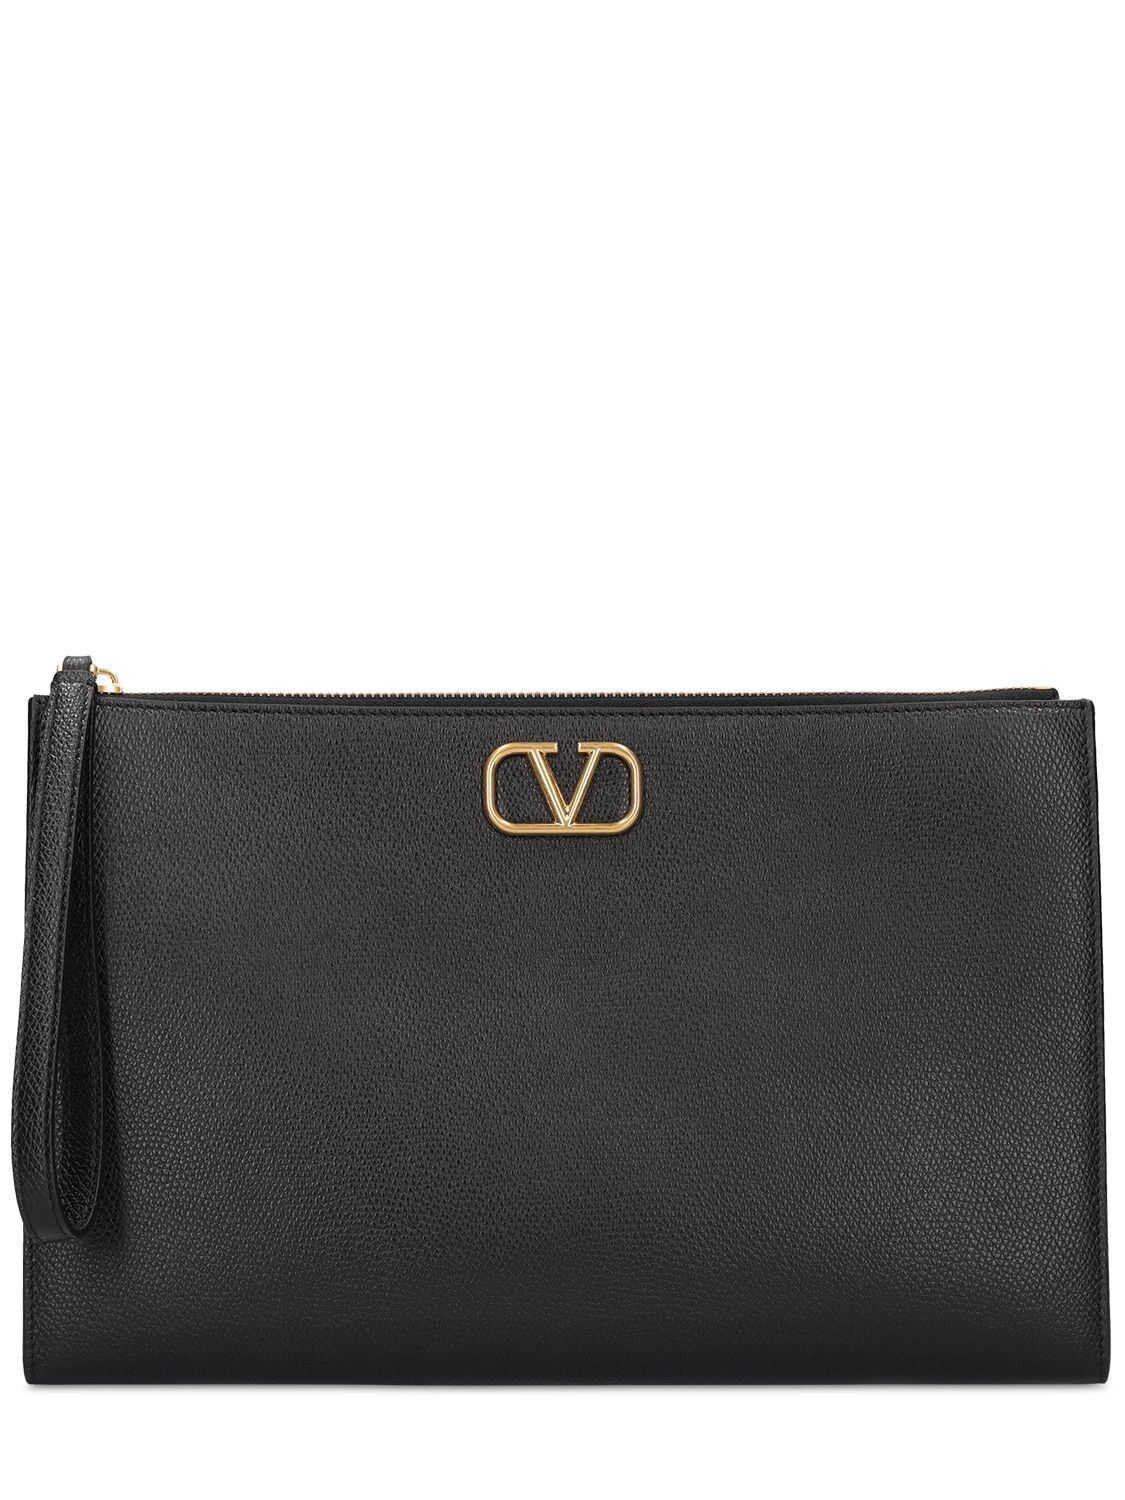 VALENTINO GARAVANI Large V Logo Signature Leather Pouch in black